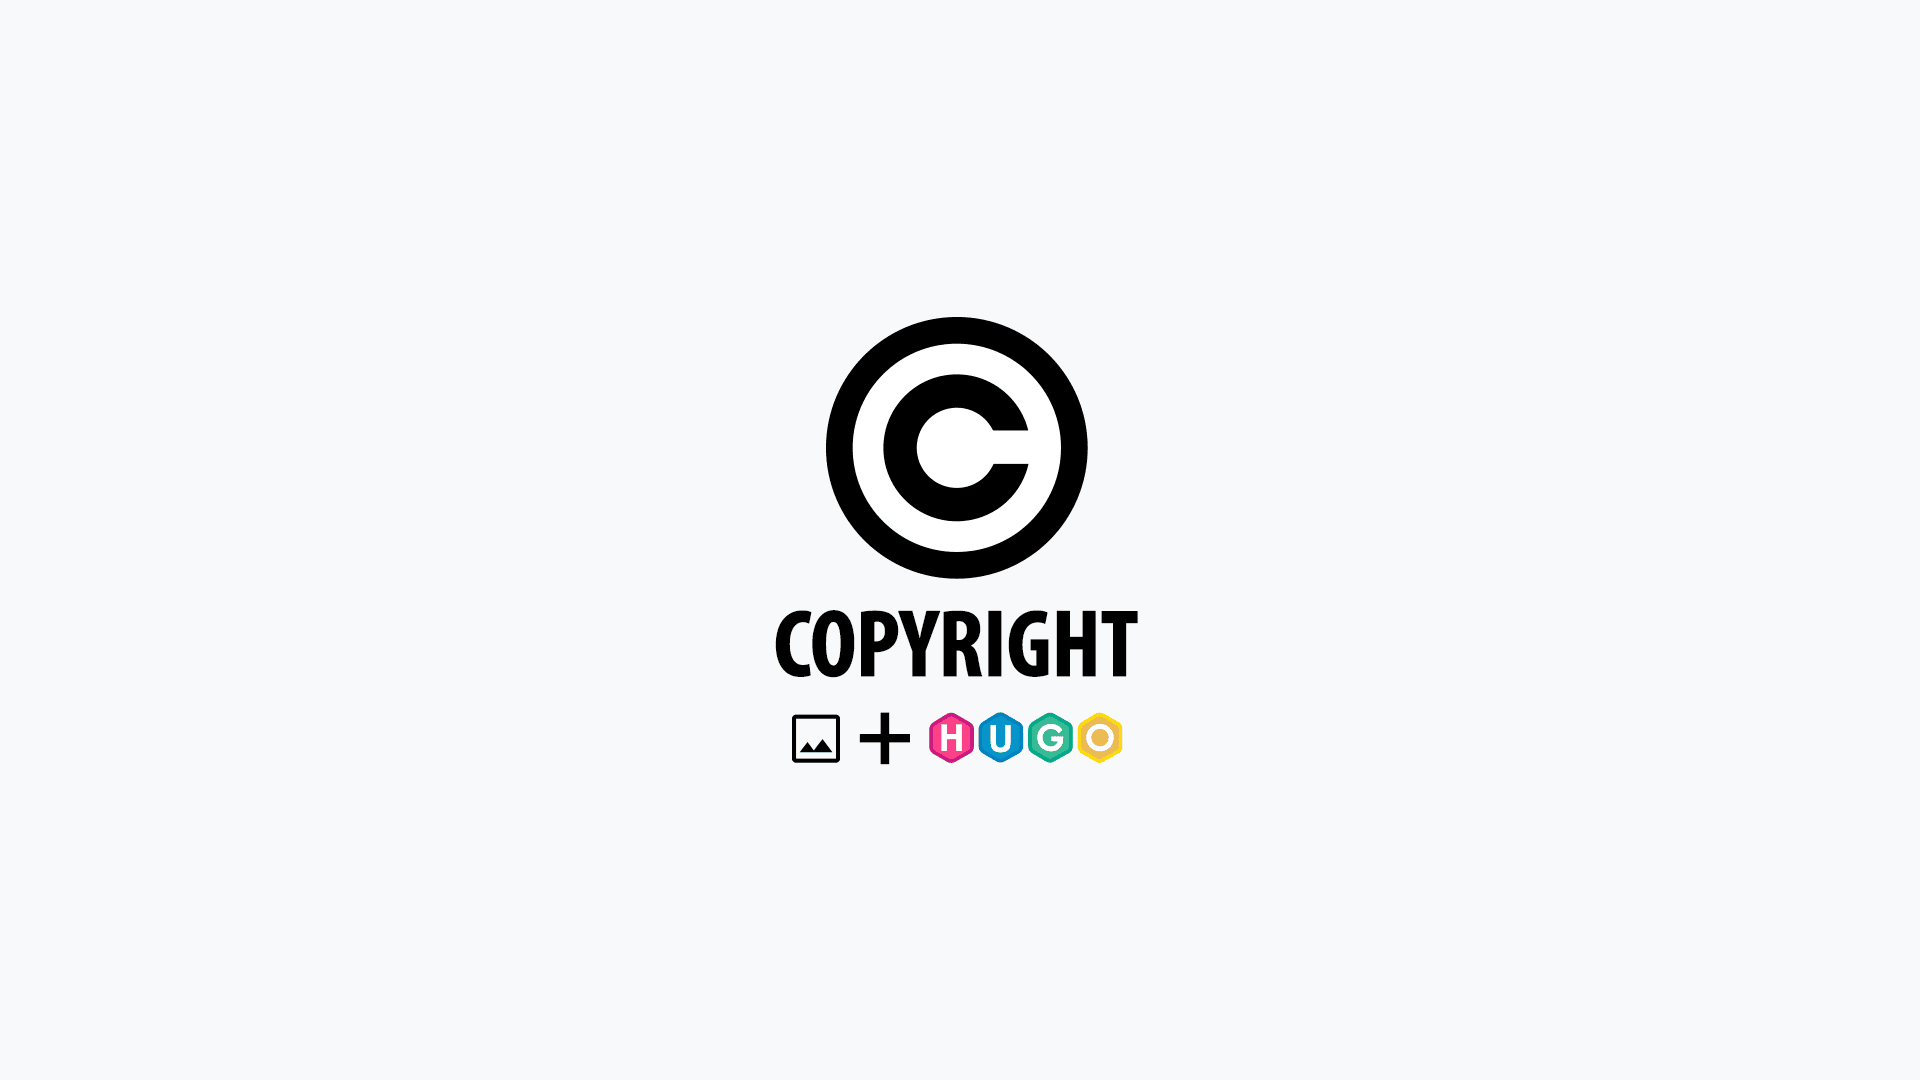 Adding copyright information for images on Hugo based website